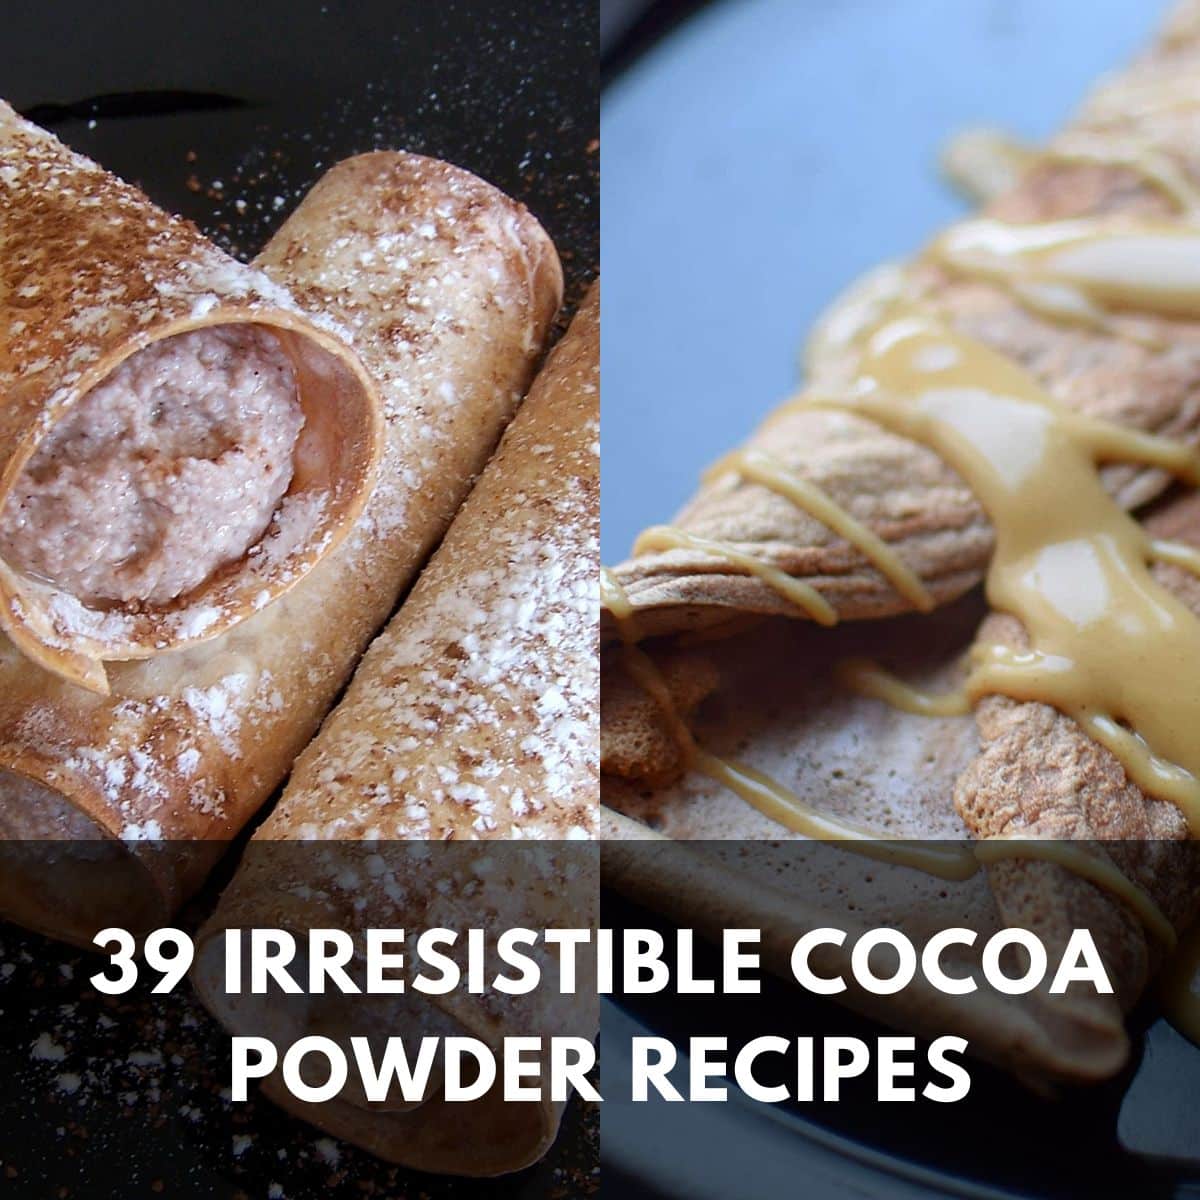 39 irresistible cocoa powder recipes main